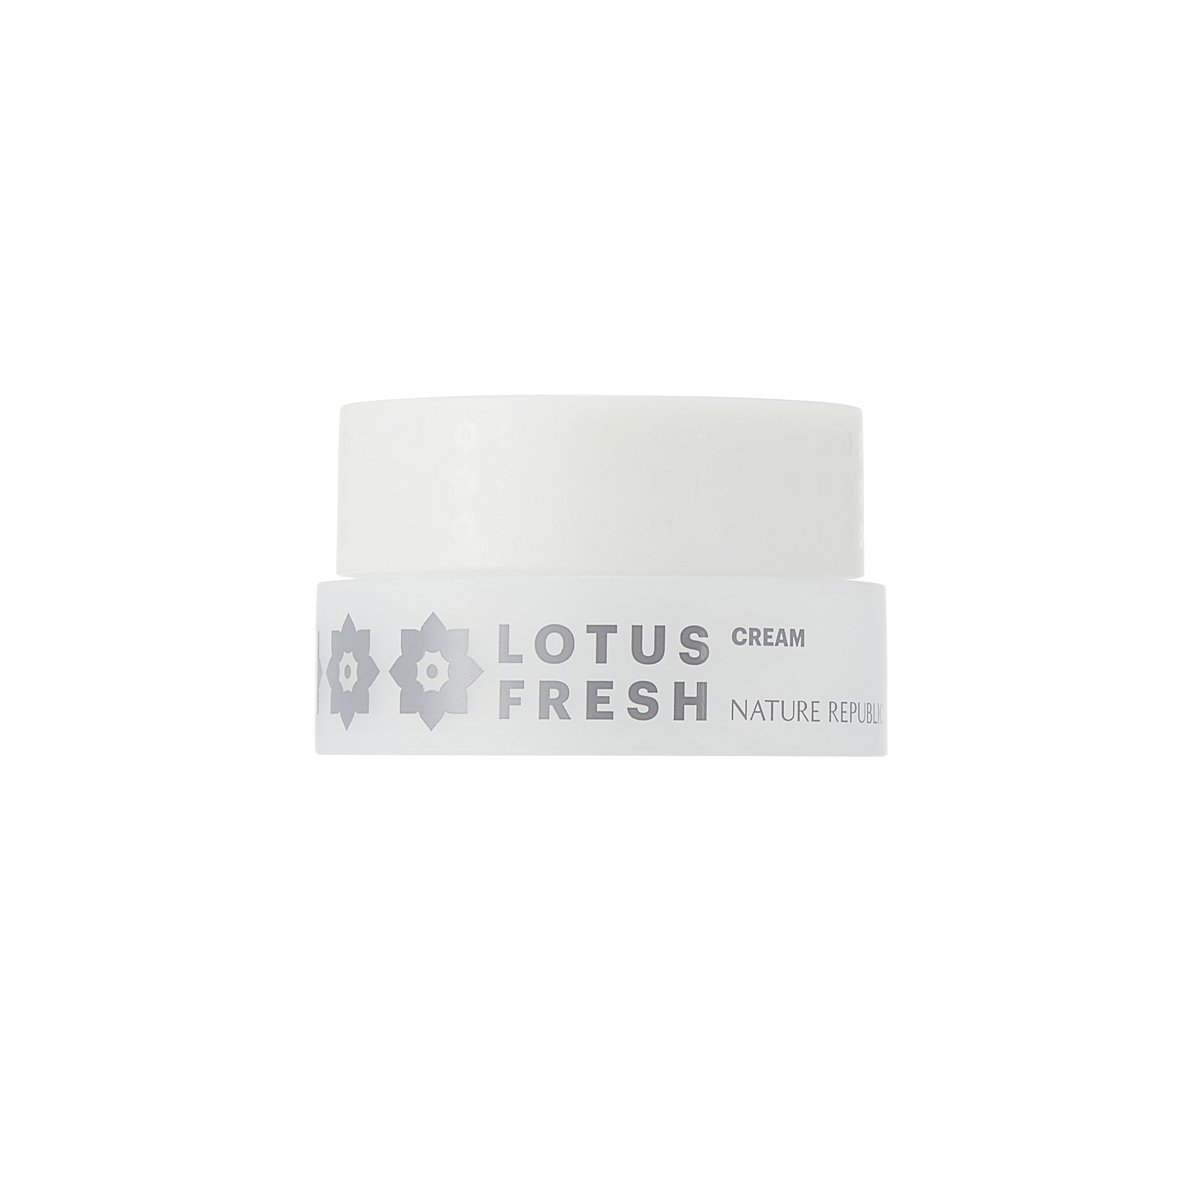 Lotus Fresh Cream - Nature Republic